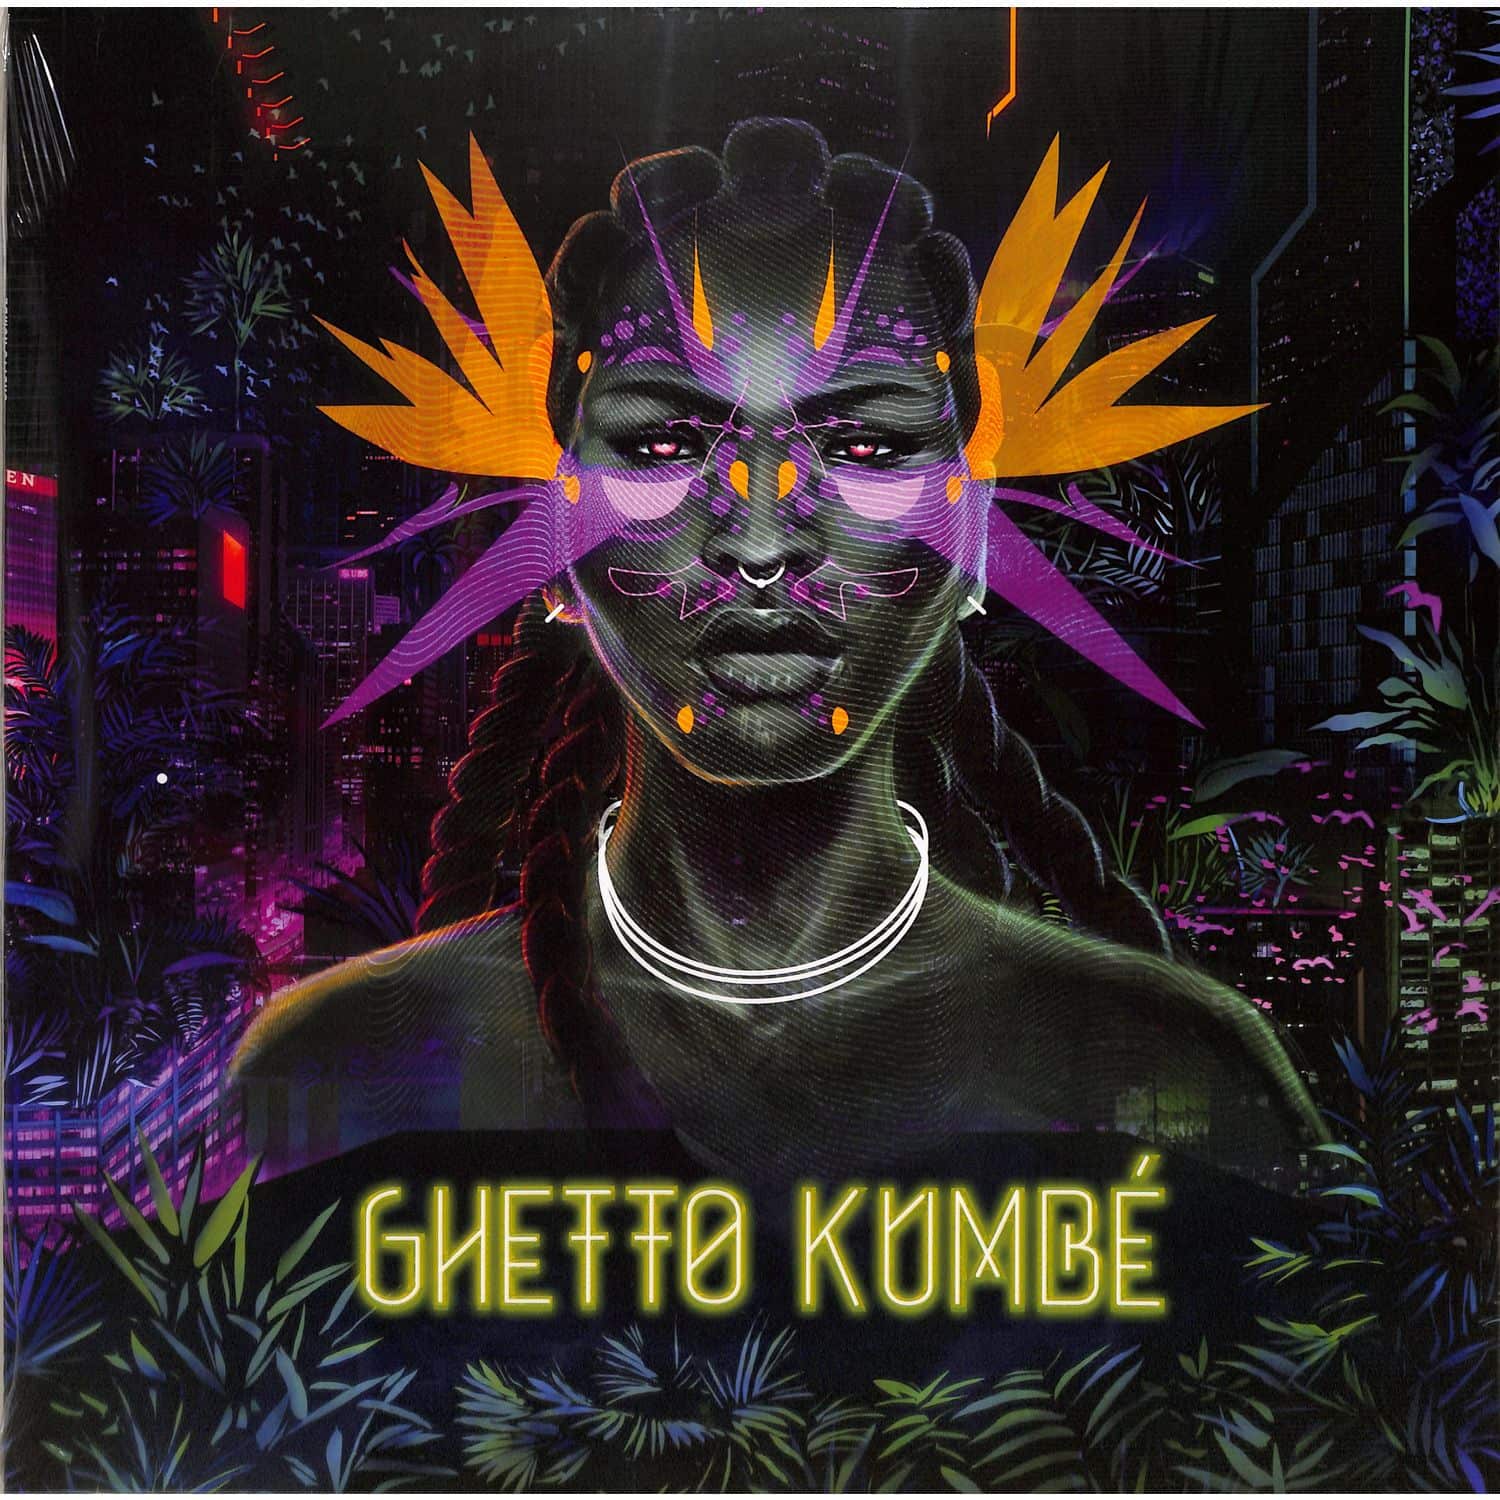 Ghetto Kumbe - GHETTO KUMBE 